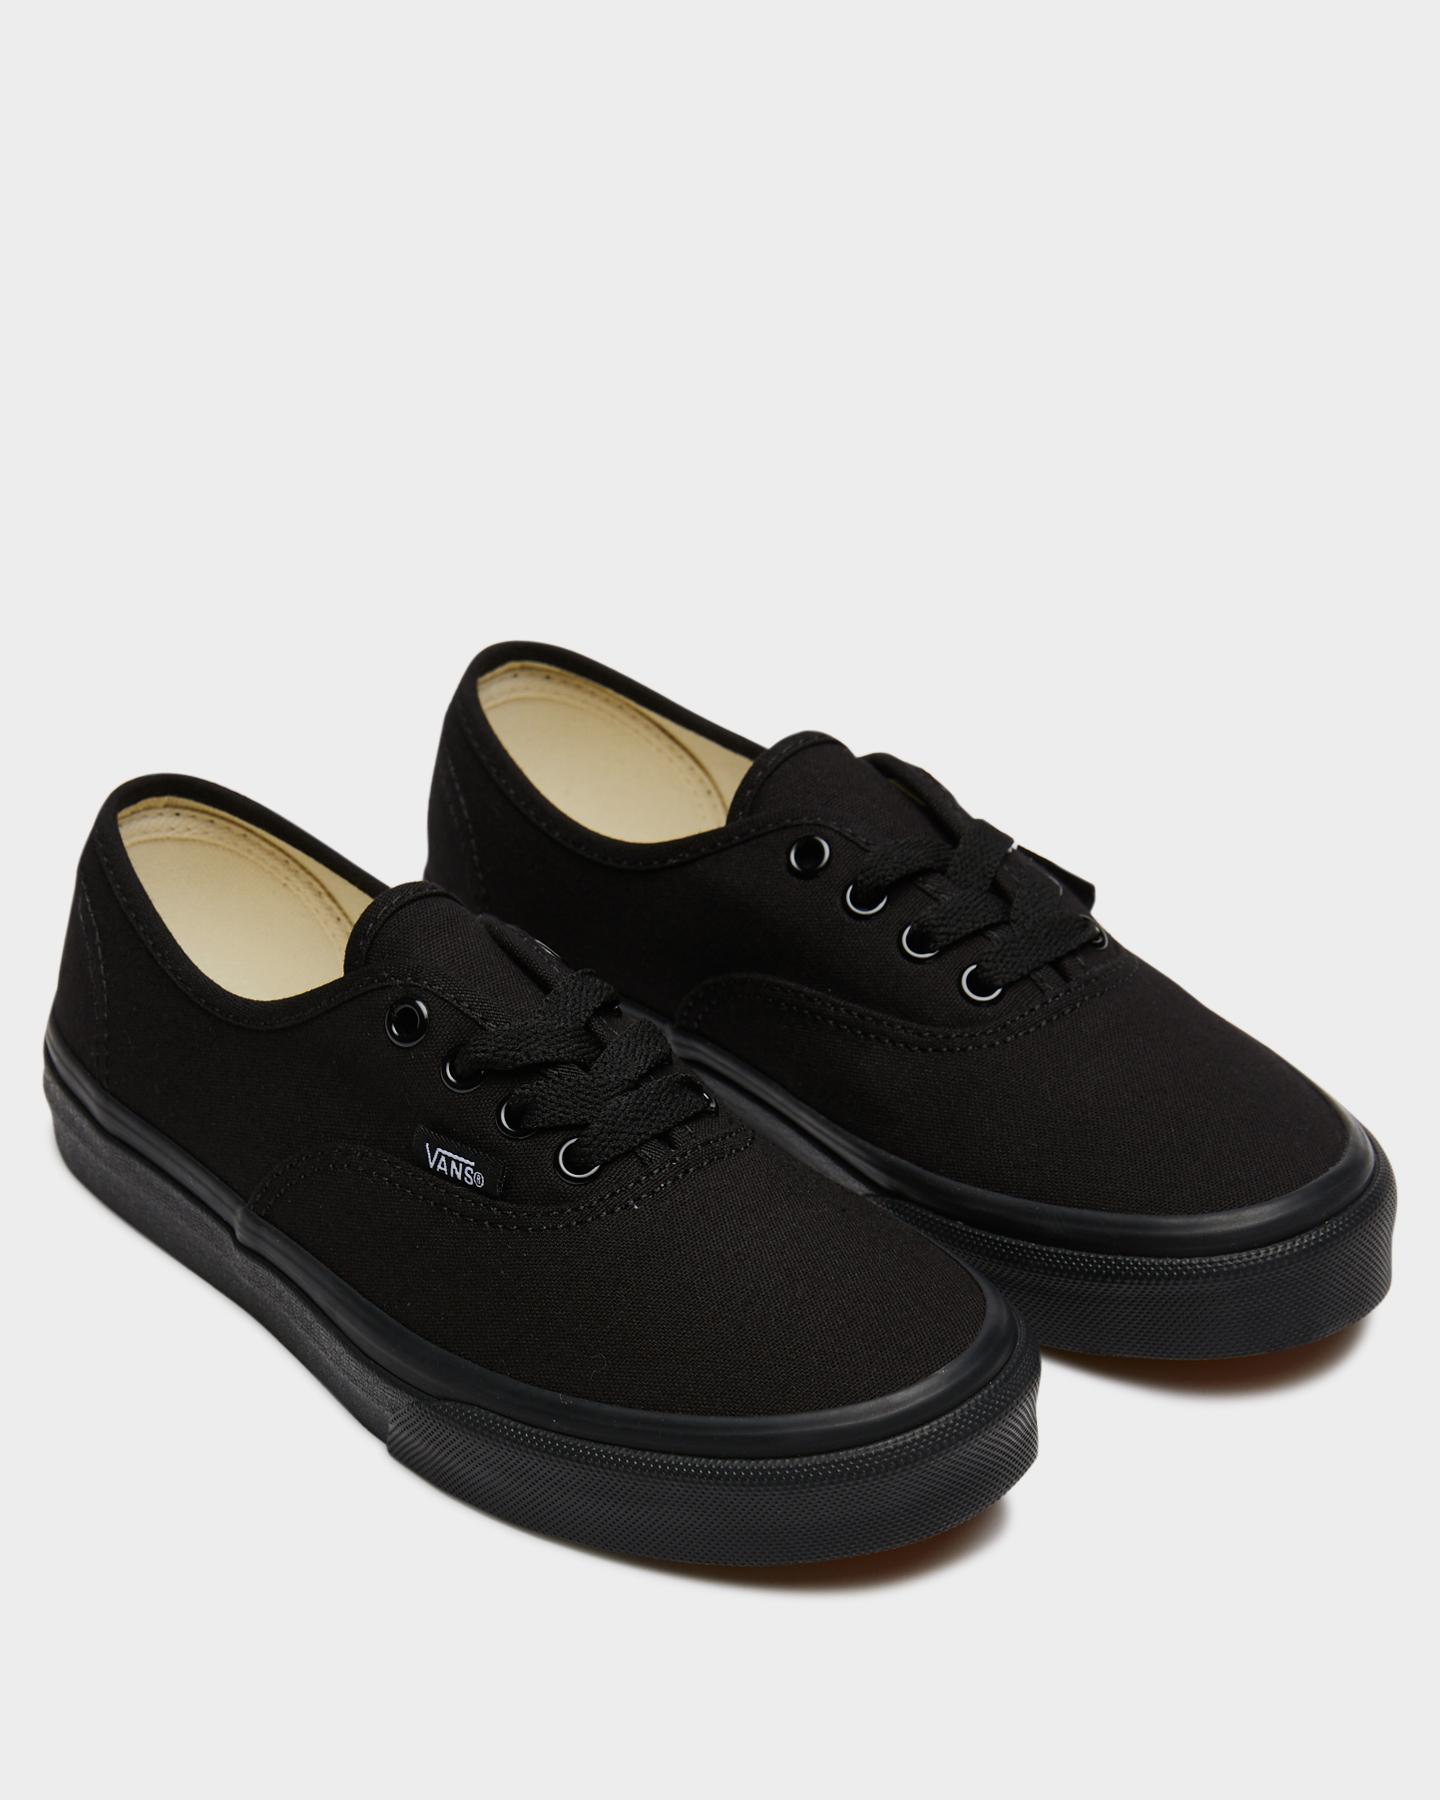 Vans Authentic Shoe - Youth - Black 